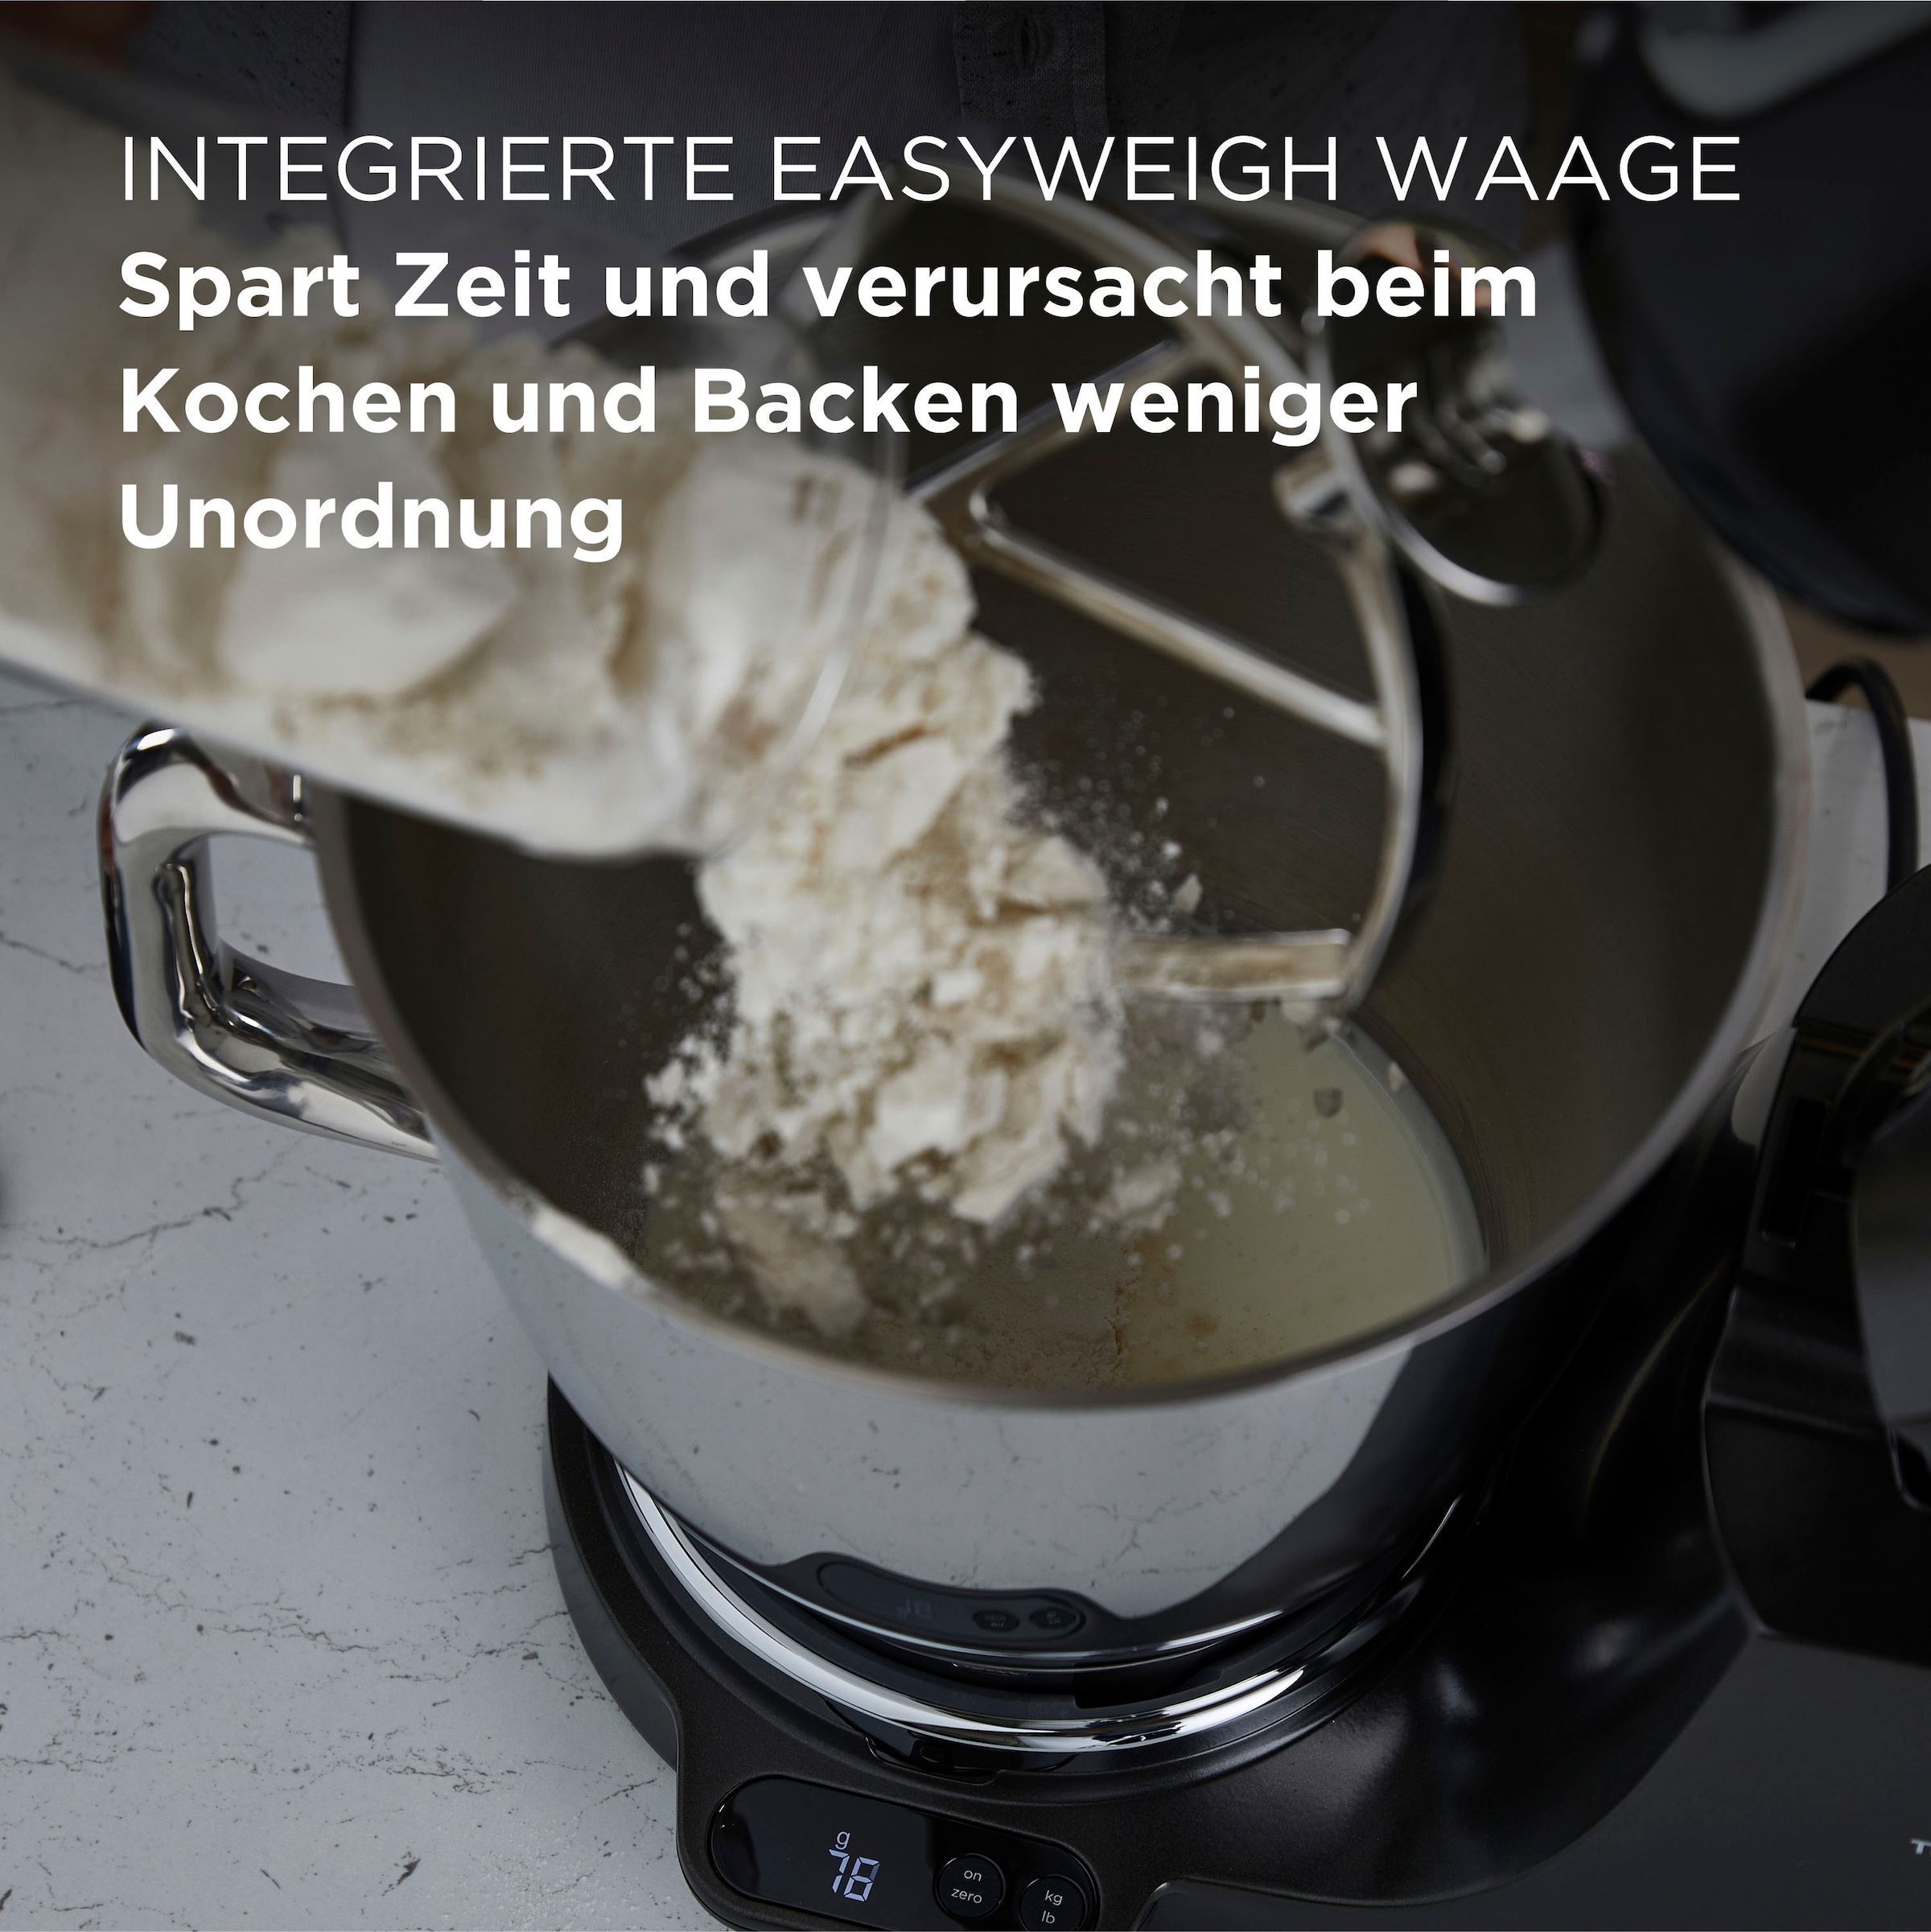 KENWOOD Küchenmaschine »Titanium Chef Baker XL KVL85.004BK, Zubehör, Gratis Wert UVP 319,-"«, Gratis: Mixaufsatz KAH359GL+Schnitzelwerk AT340